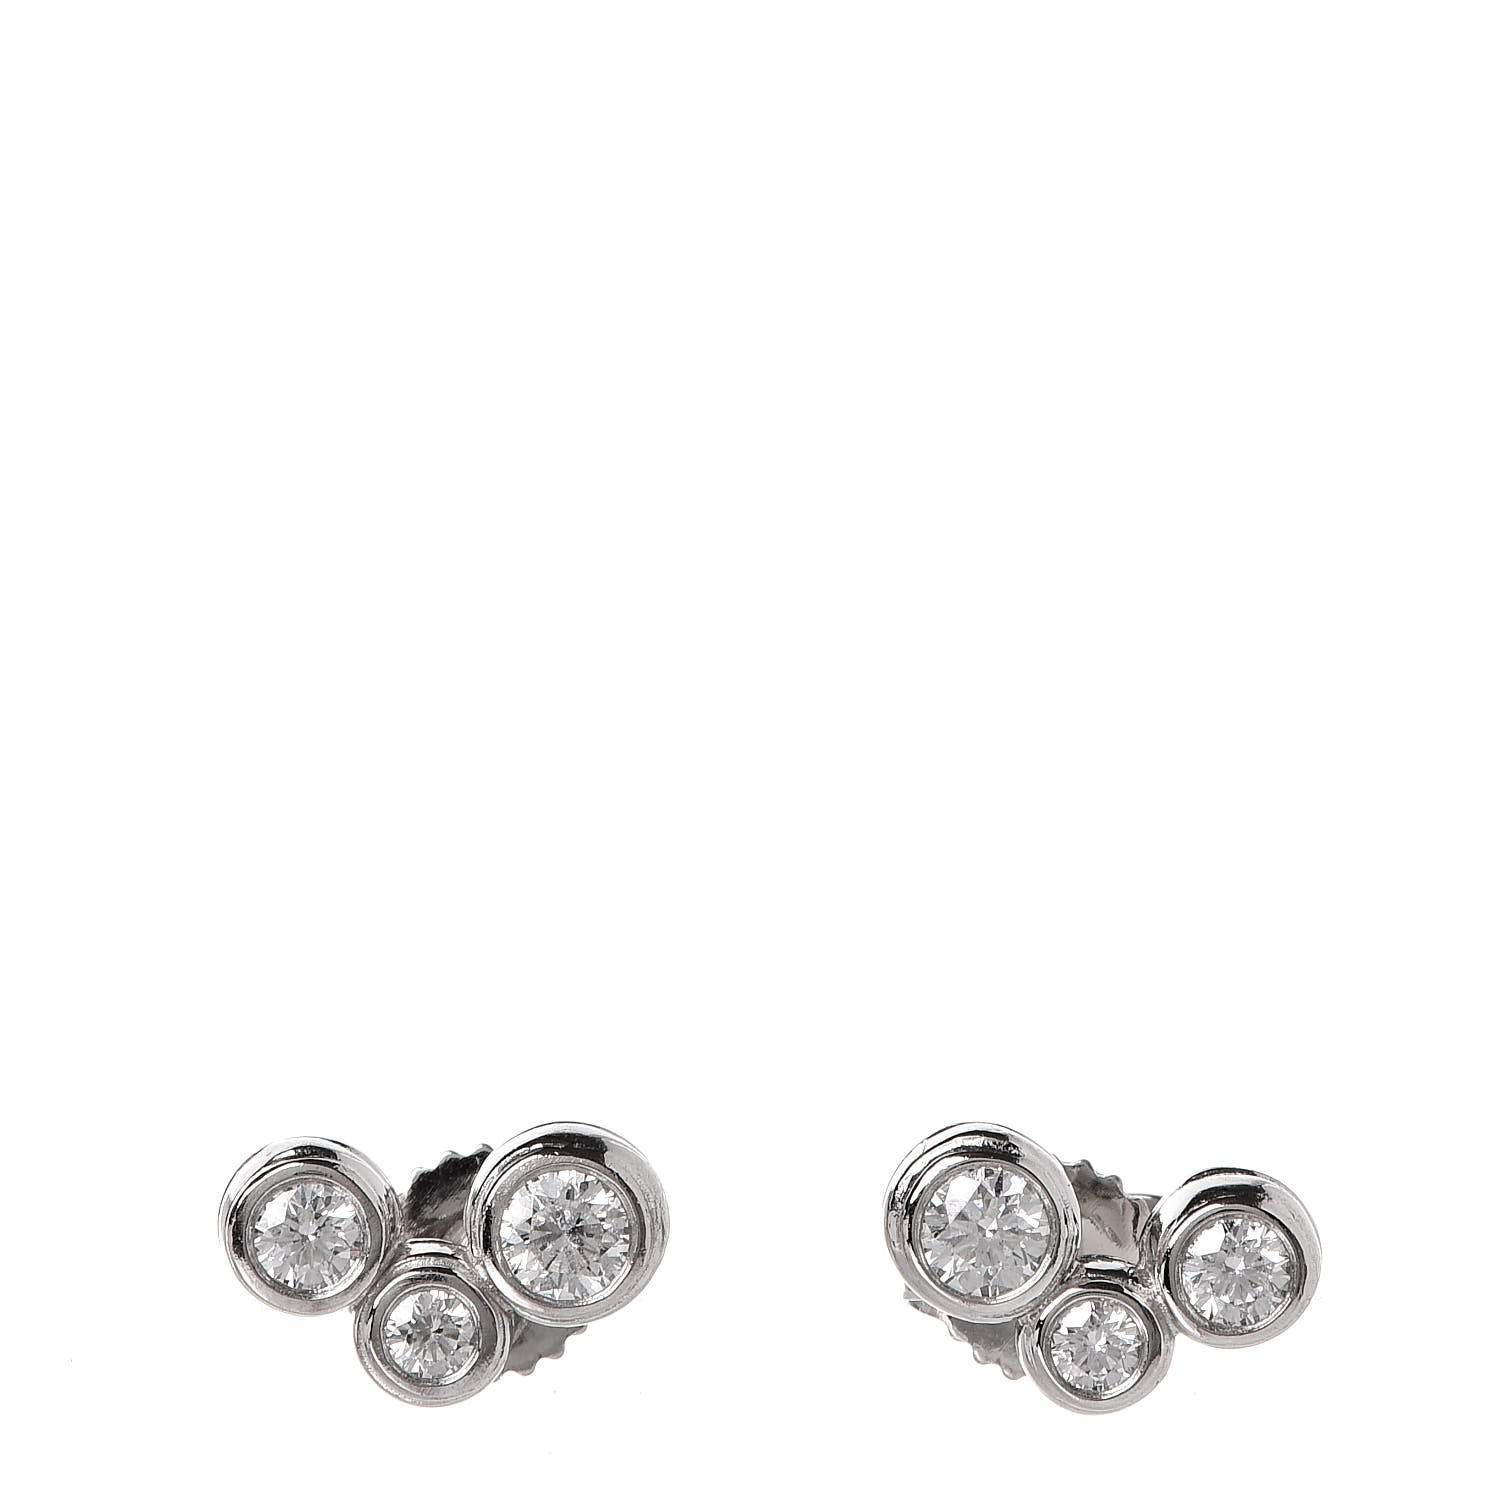 tiffany bubbles earrings